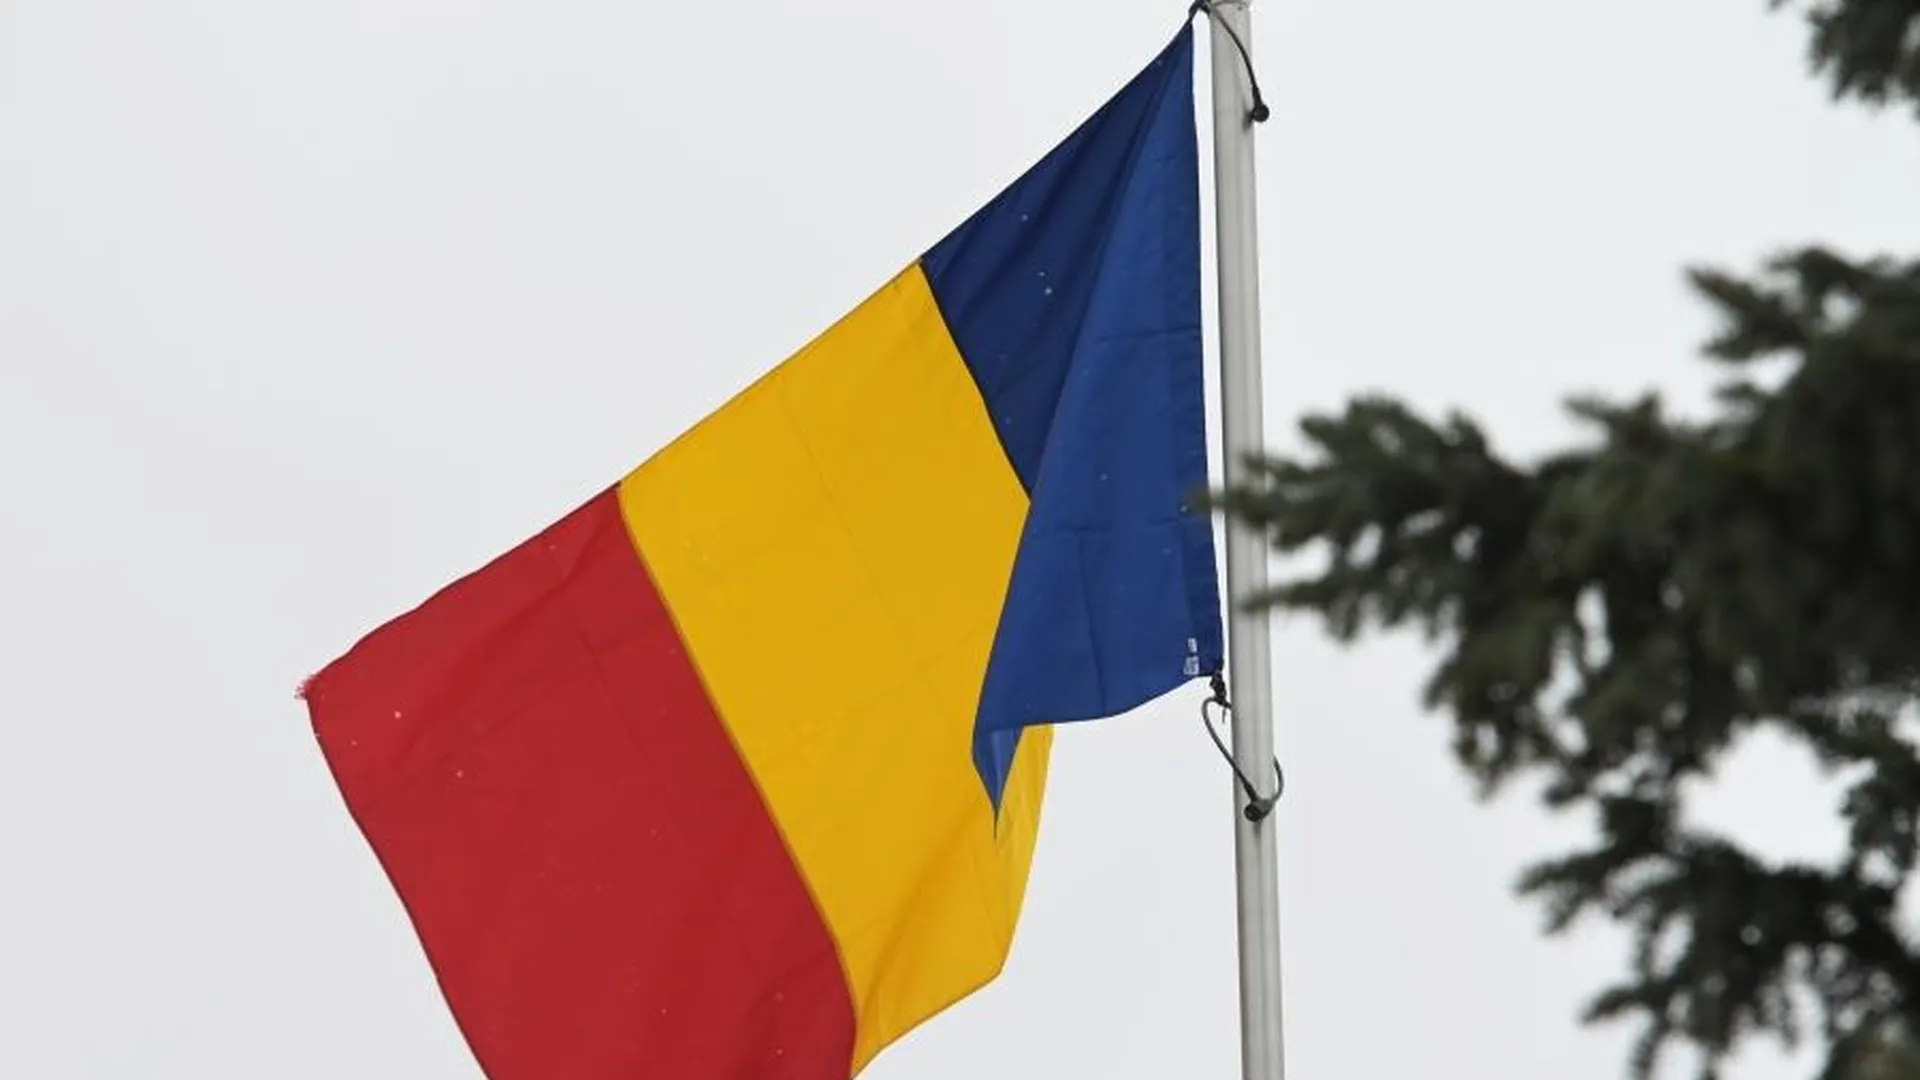 Европарламент вспомнил о претензии Румынии к России, которой больше столетия